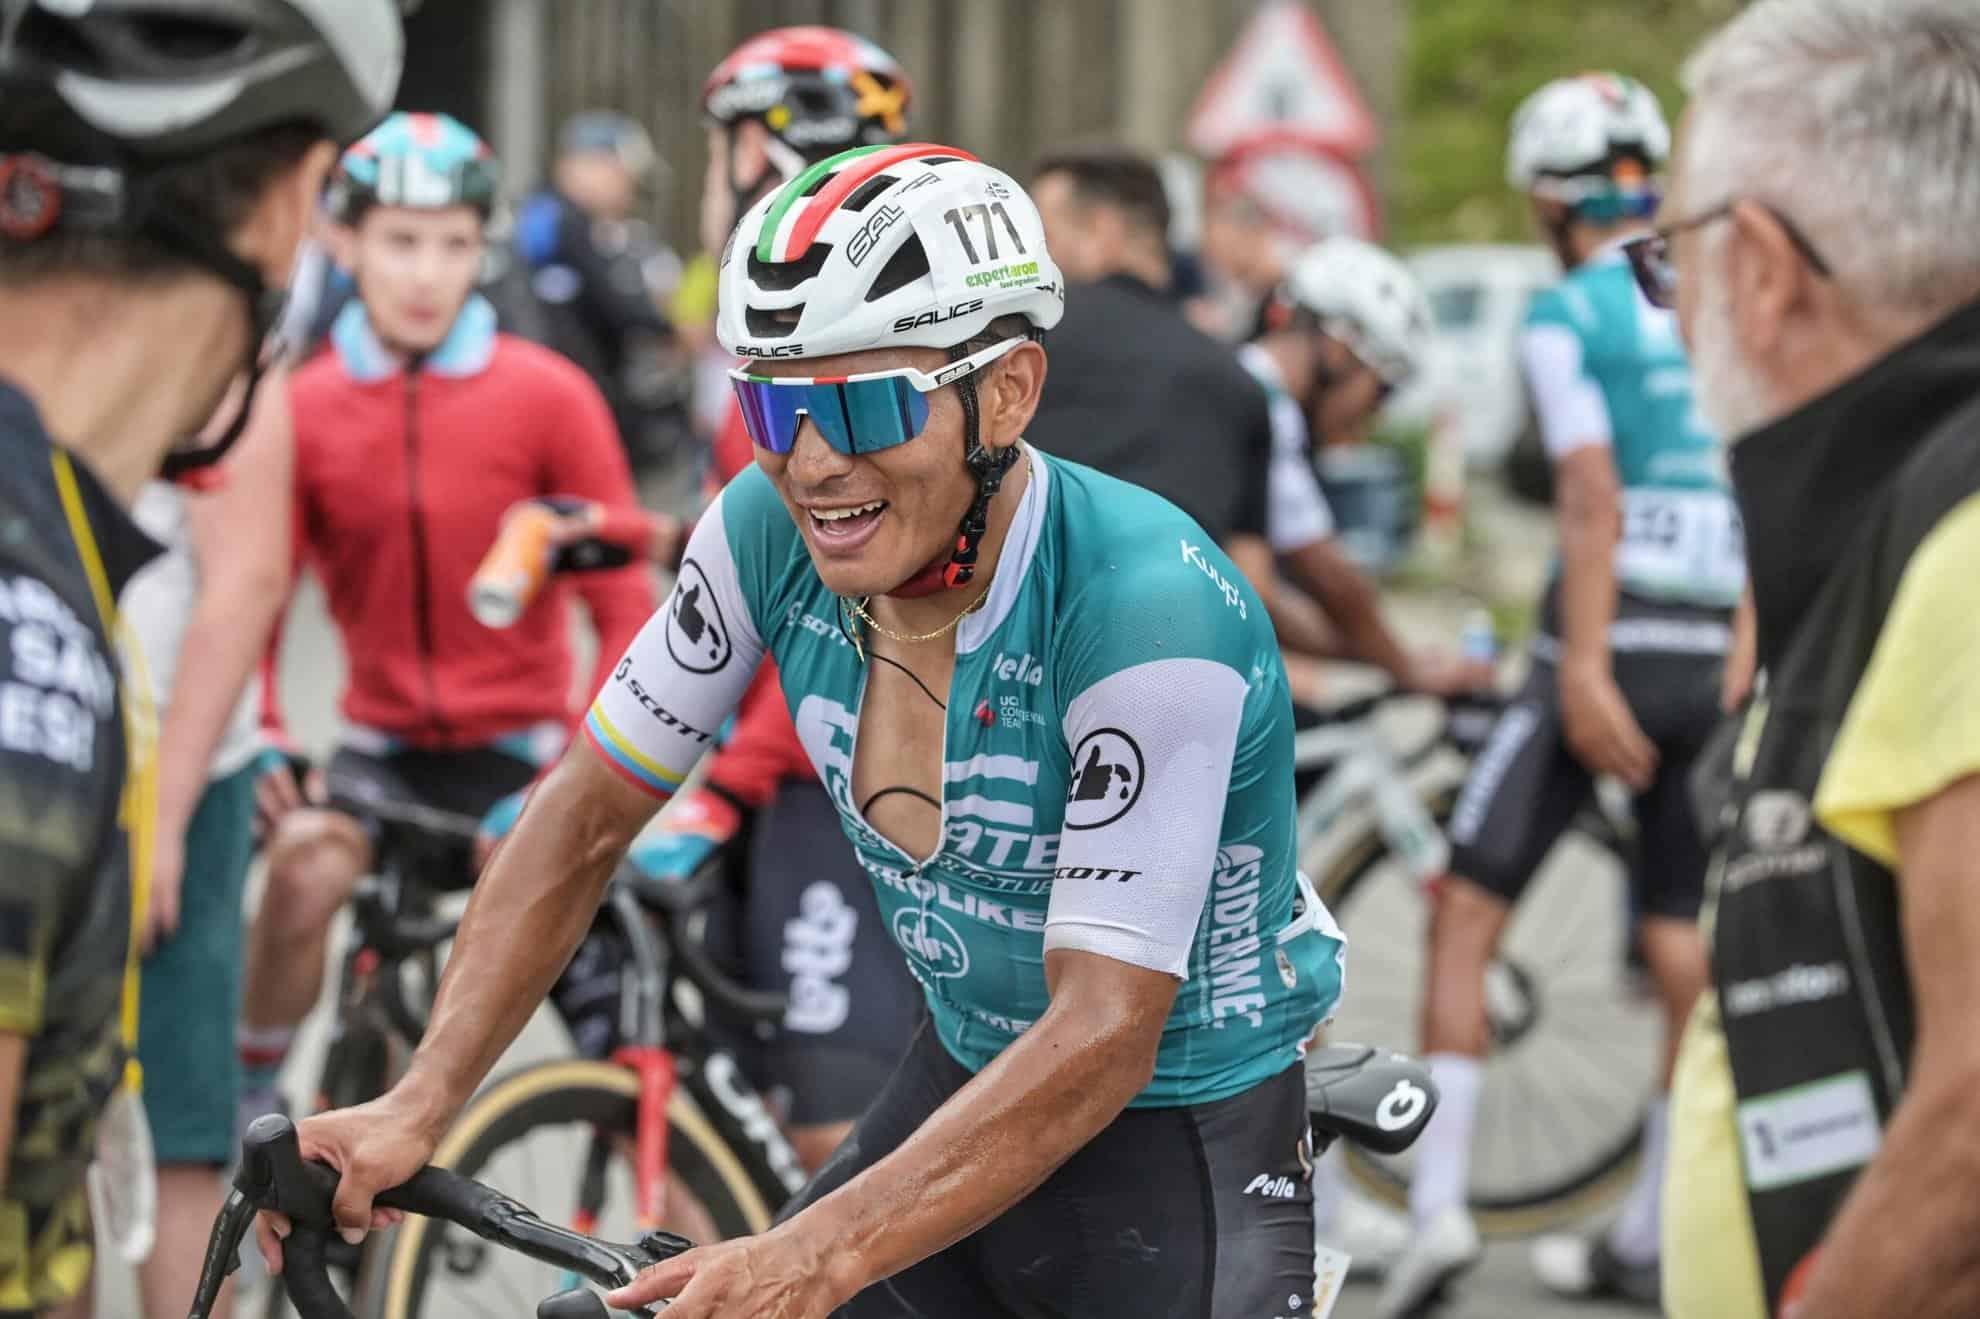 jonathan caicedo câștigă etapa a 3-a a turului ciclist al sibiului, iar florian lipowitz devine noul lider al clasamentului general (foto)